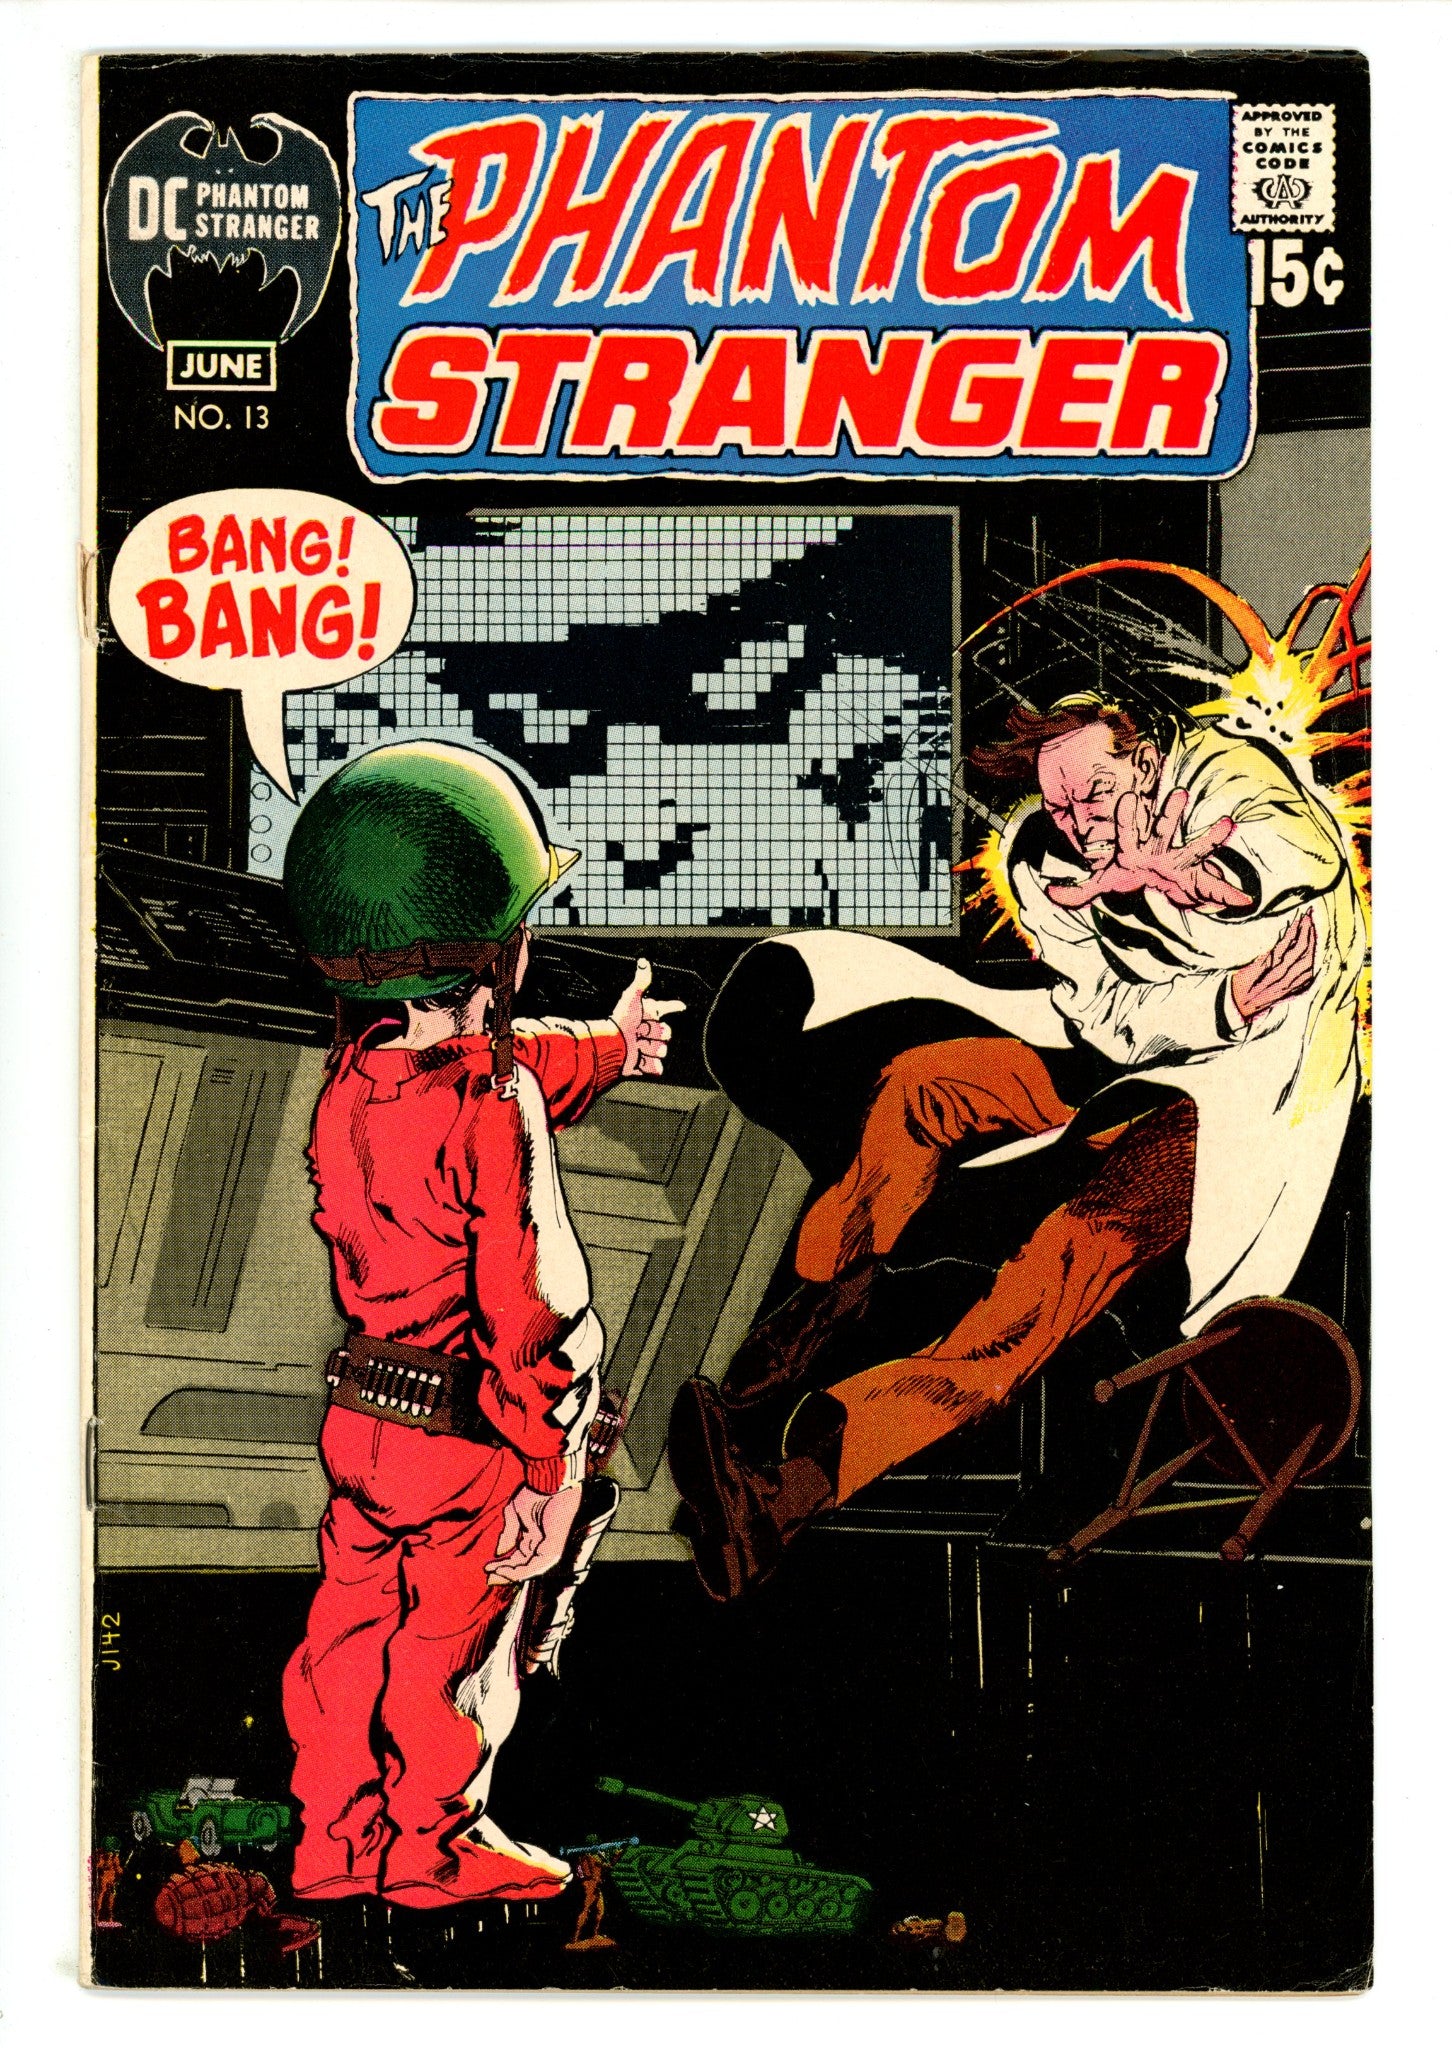 The Phantom Stranger Vol 2 13 VG/FN (5.0) (1971) 